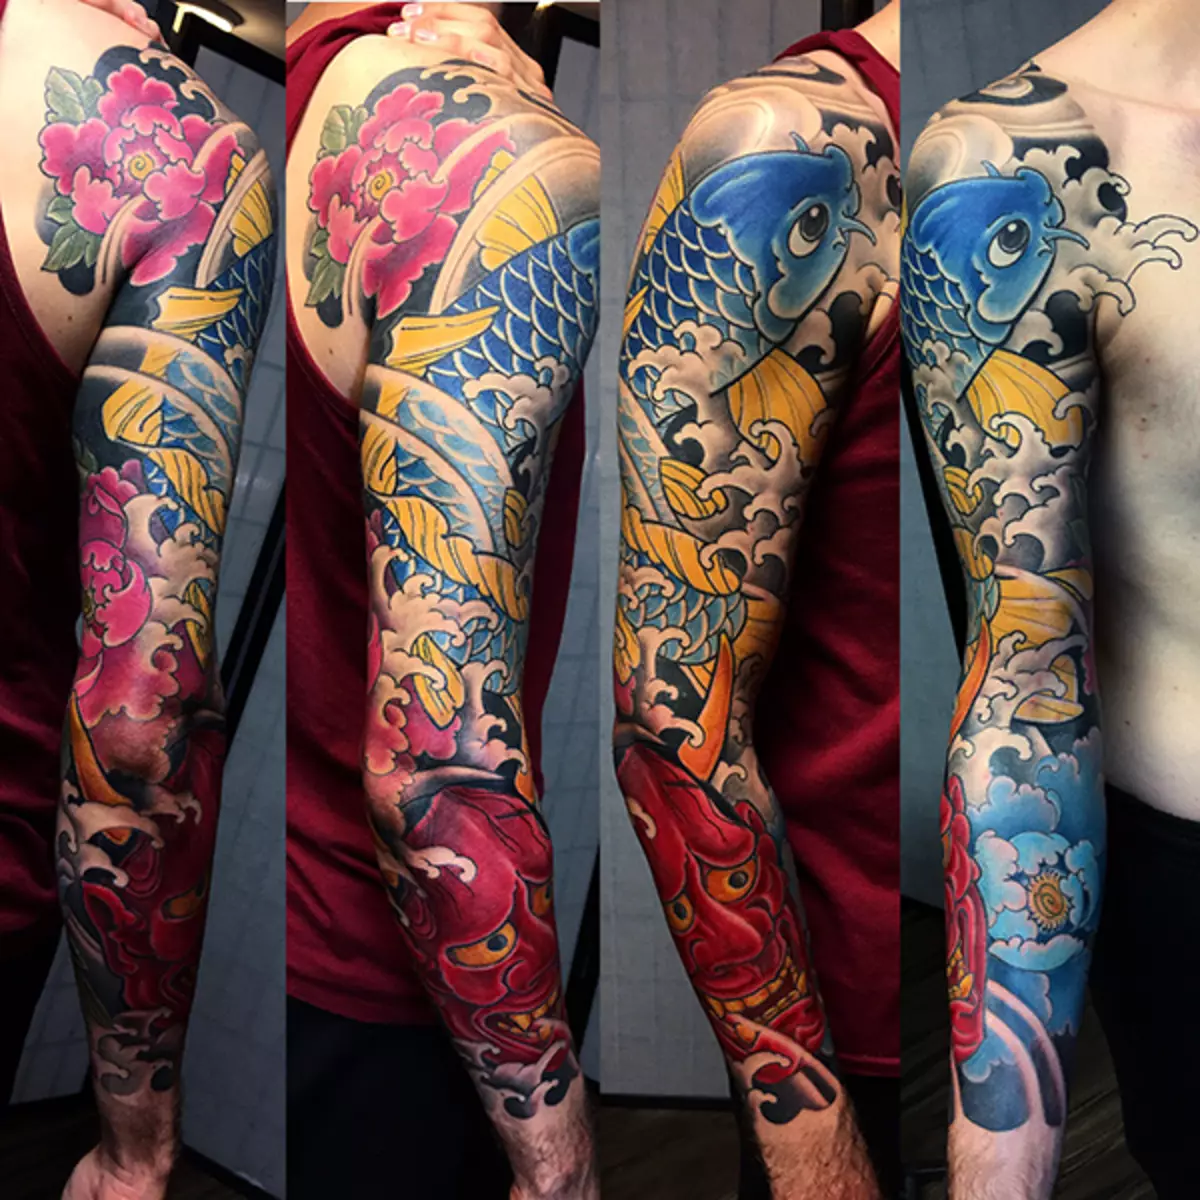 იაპონიის Tattoo Sleeves: იაპონური tattoo სკეტჩები, შავი და თეთრი და ფერადი. ნახევრად აუქციონი და მთელი 